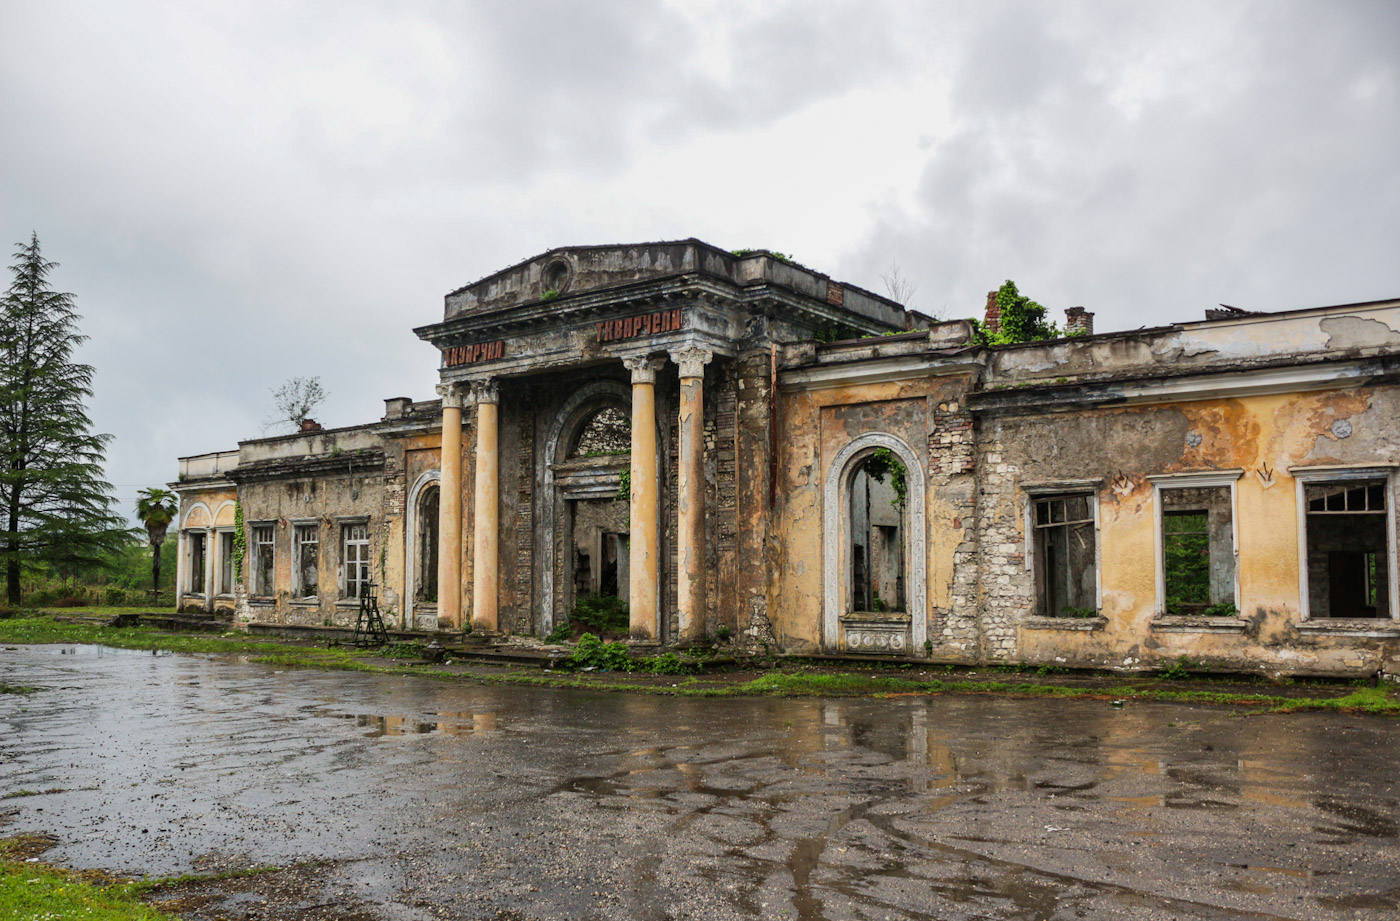 Abkhazian Railway — Stations & ways